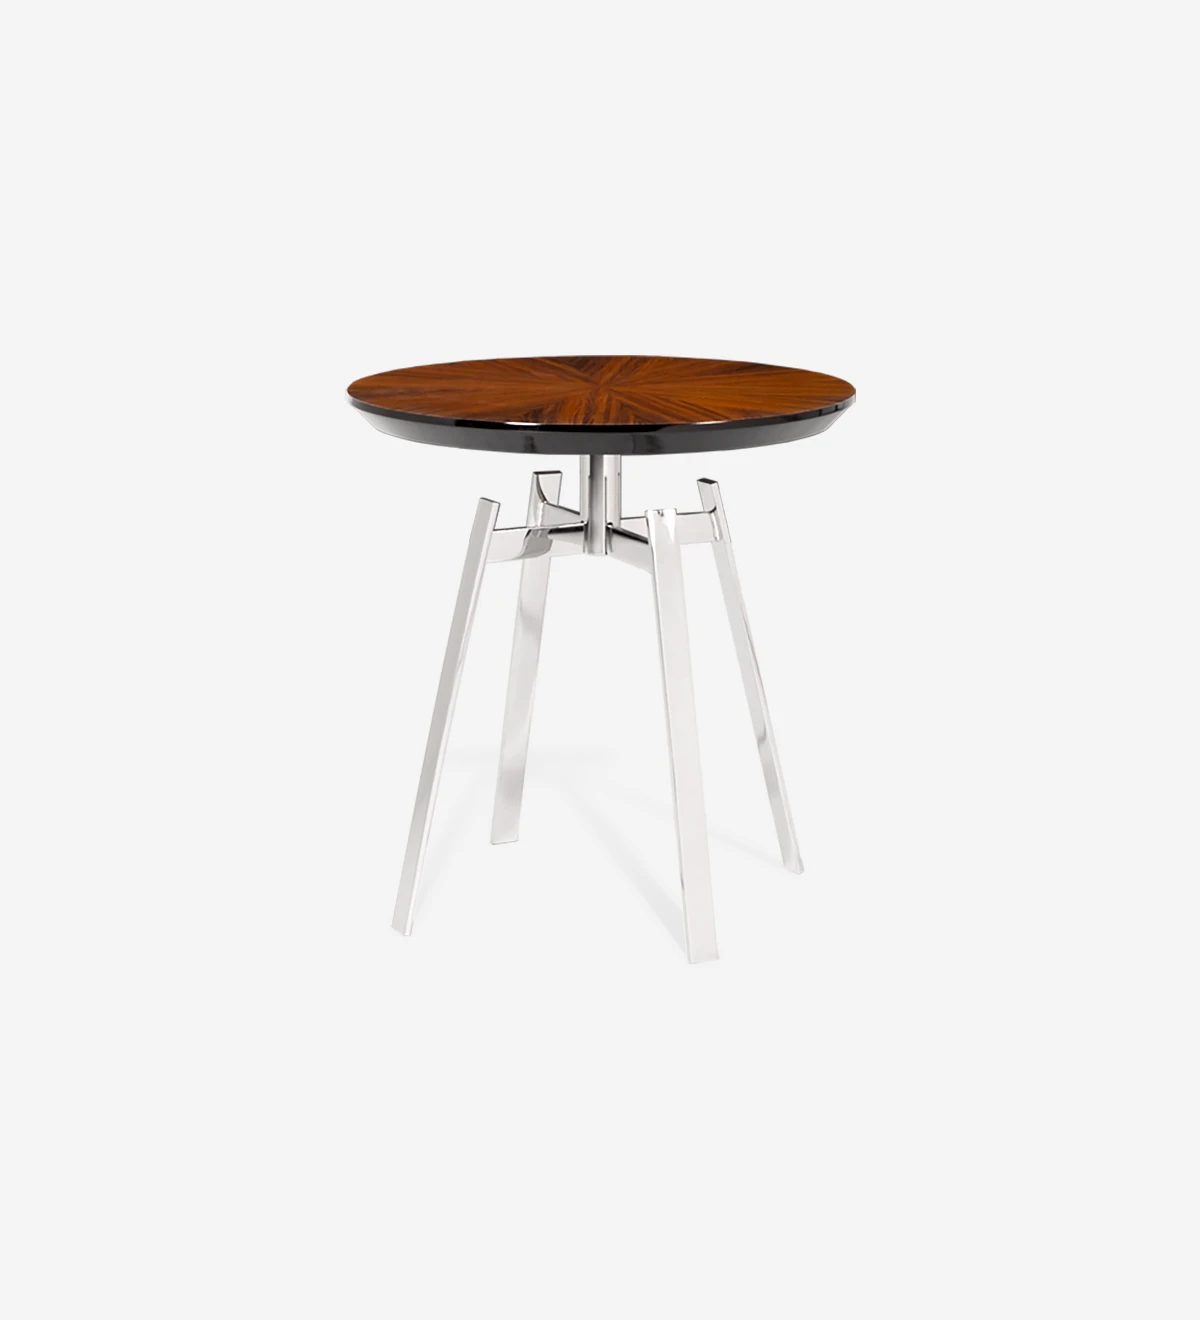 Table d'Appui ronde, avec plateau en palissandre brillant et pied en acier inoxydable.